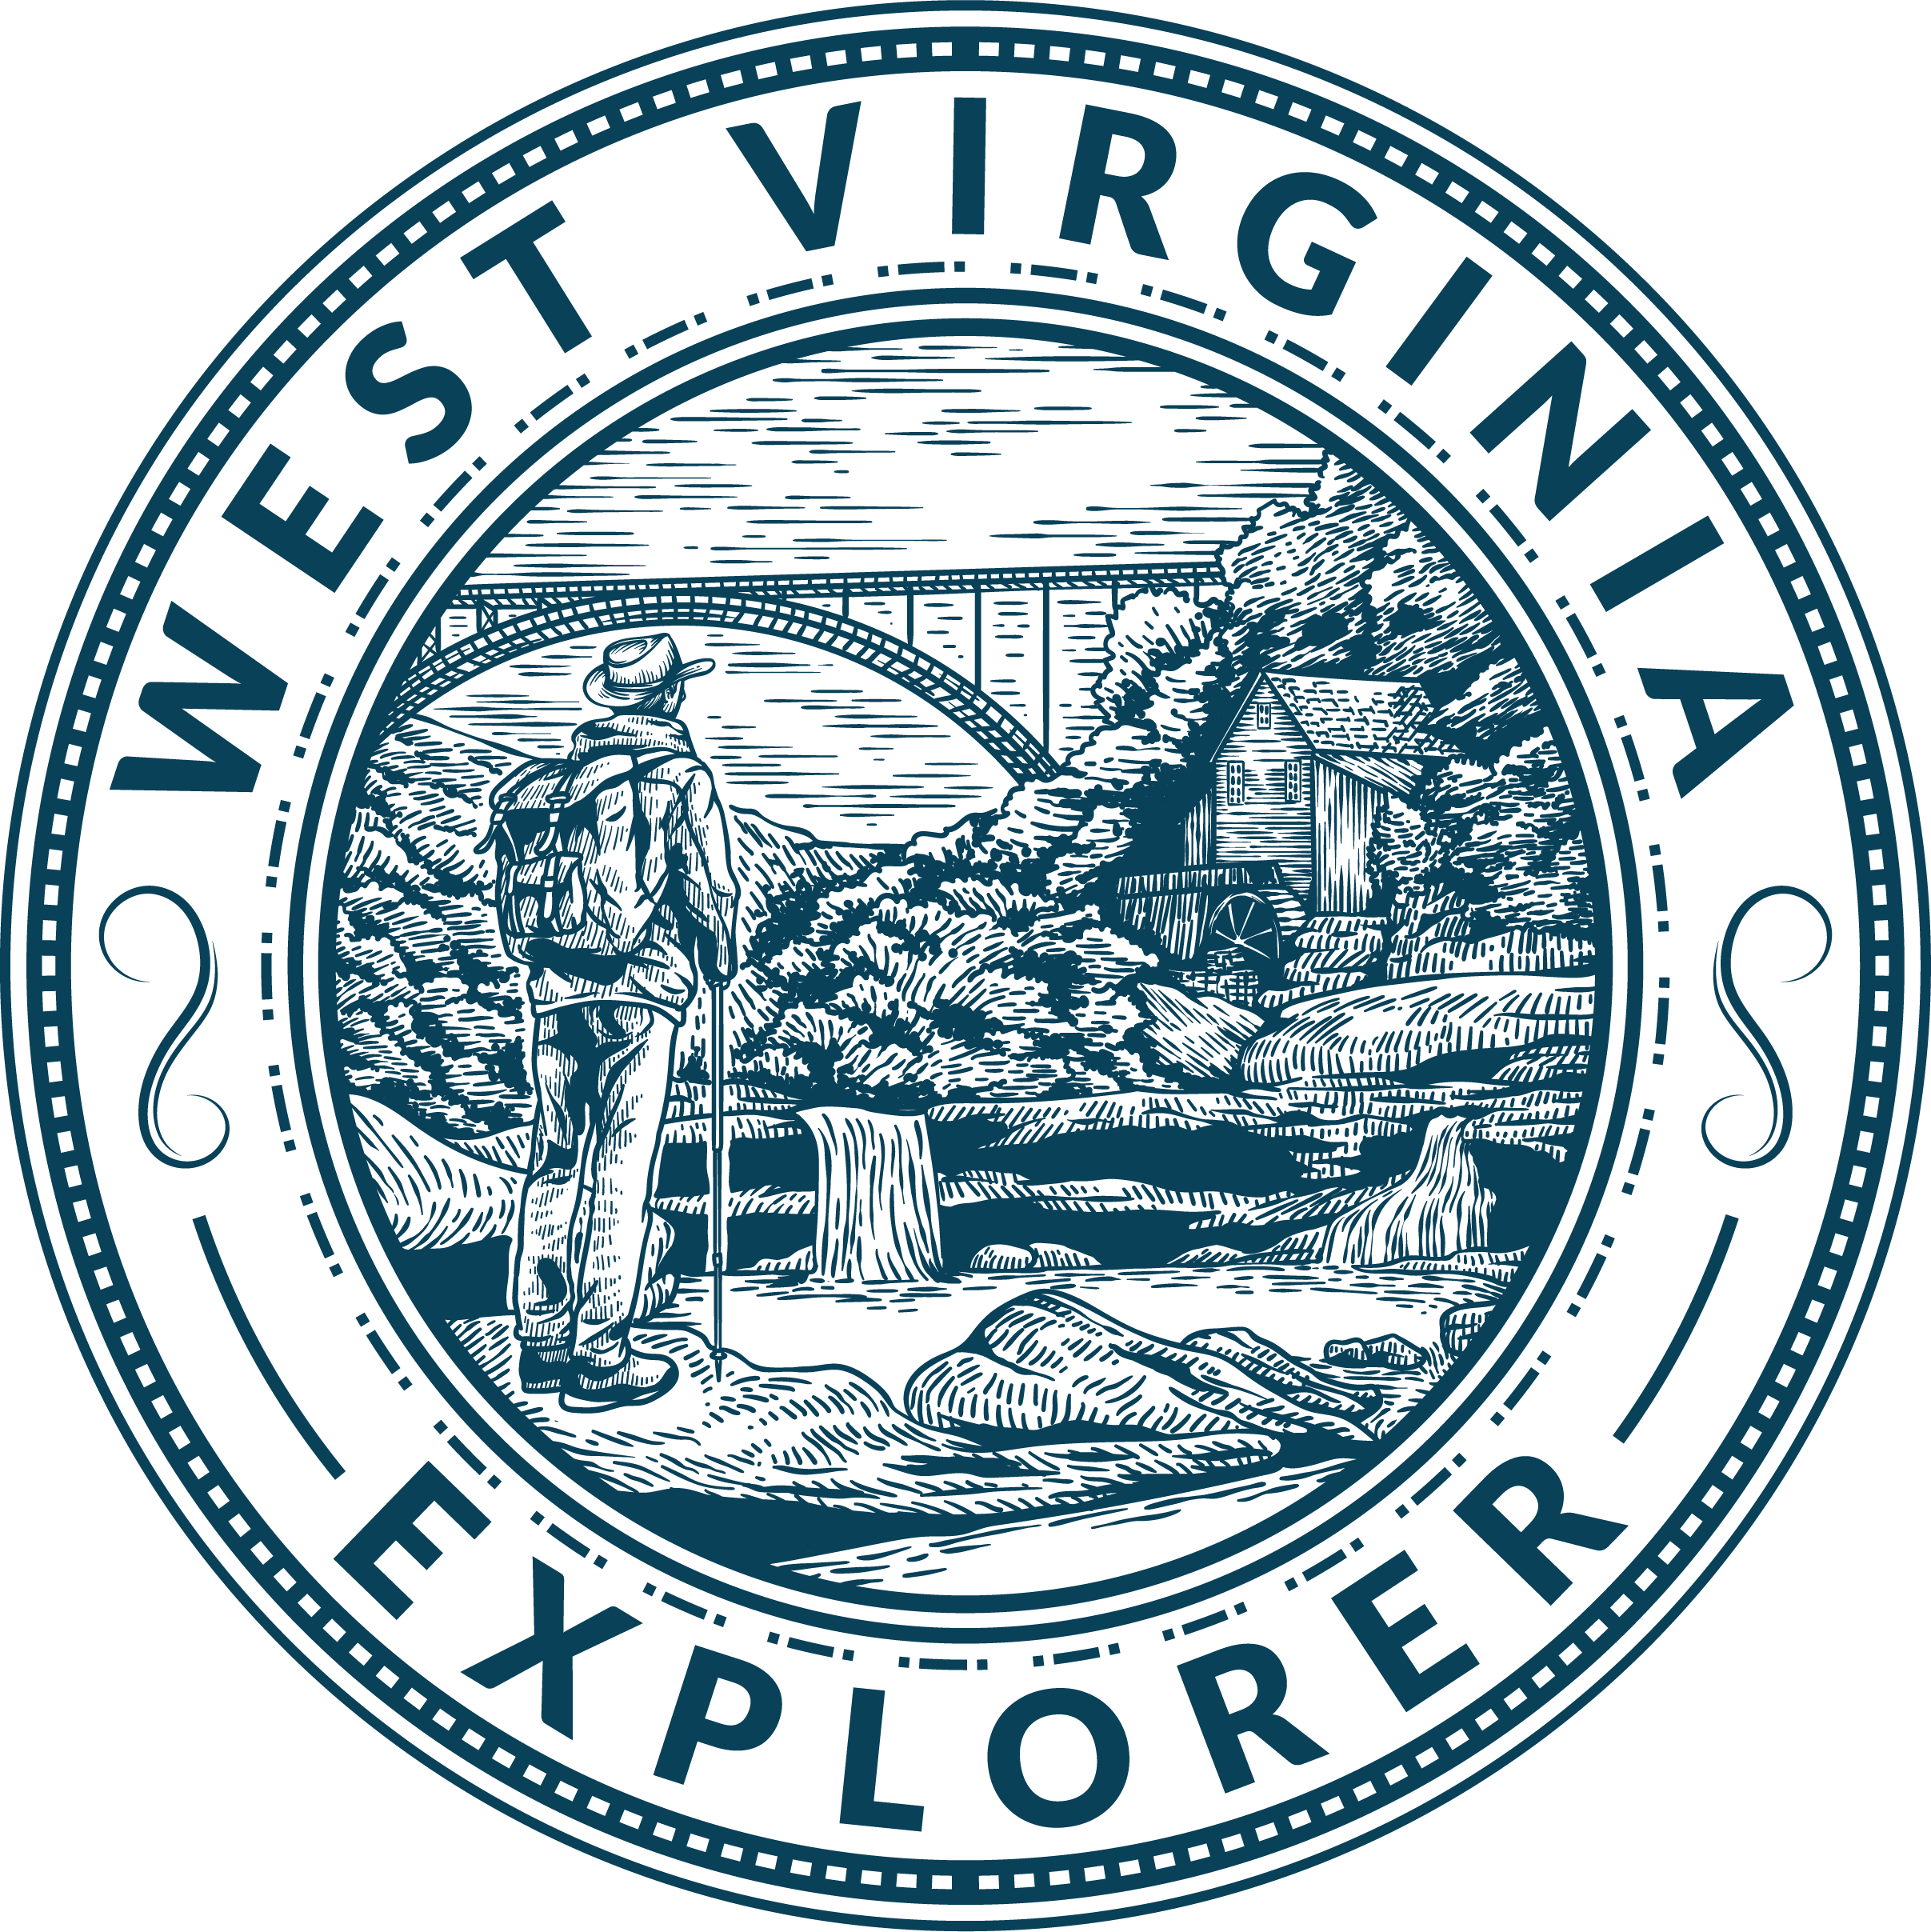 Wild, Wondering West Virginia: Exploring West Virginia's Native American  History - West Virginia Public Broadcasting : West Virginia Public  Broadcasting